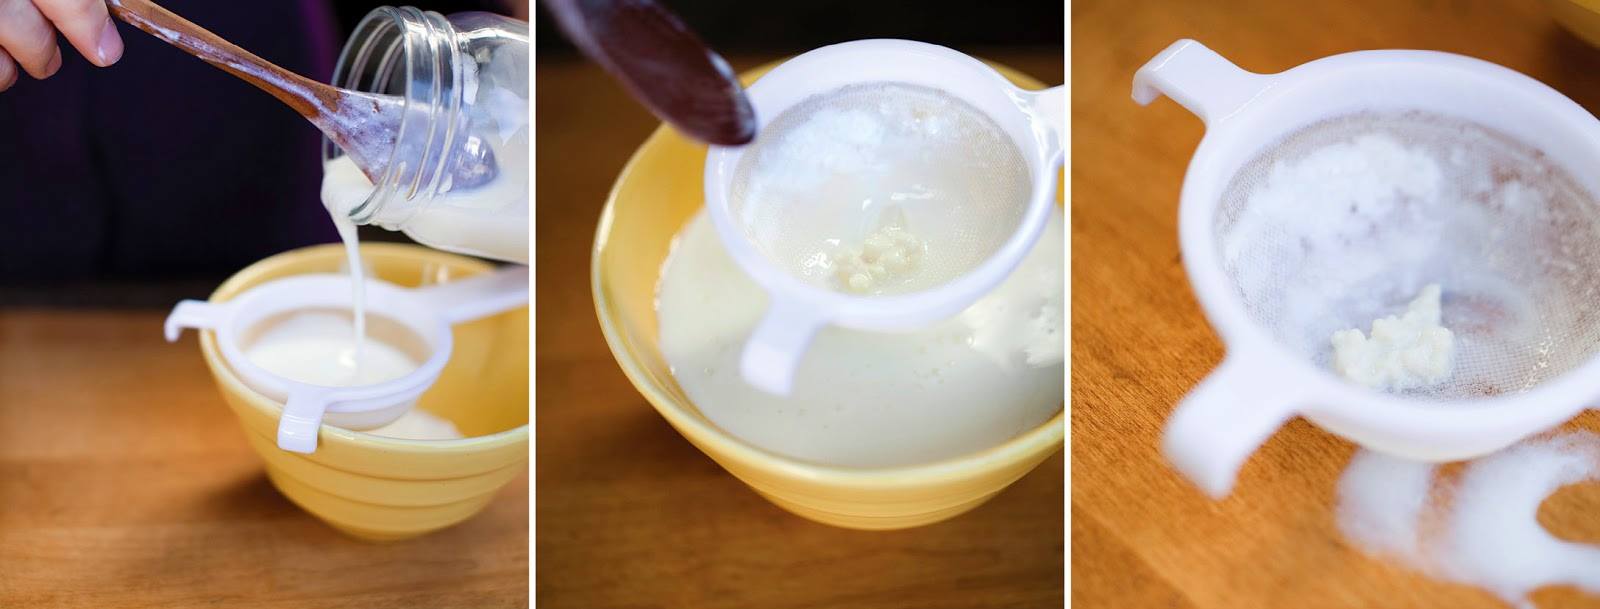 Cách làm nấm sữa kefir cực đơn giản ngay tại nhà